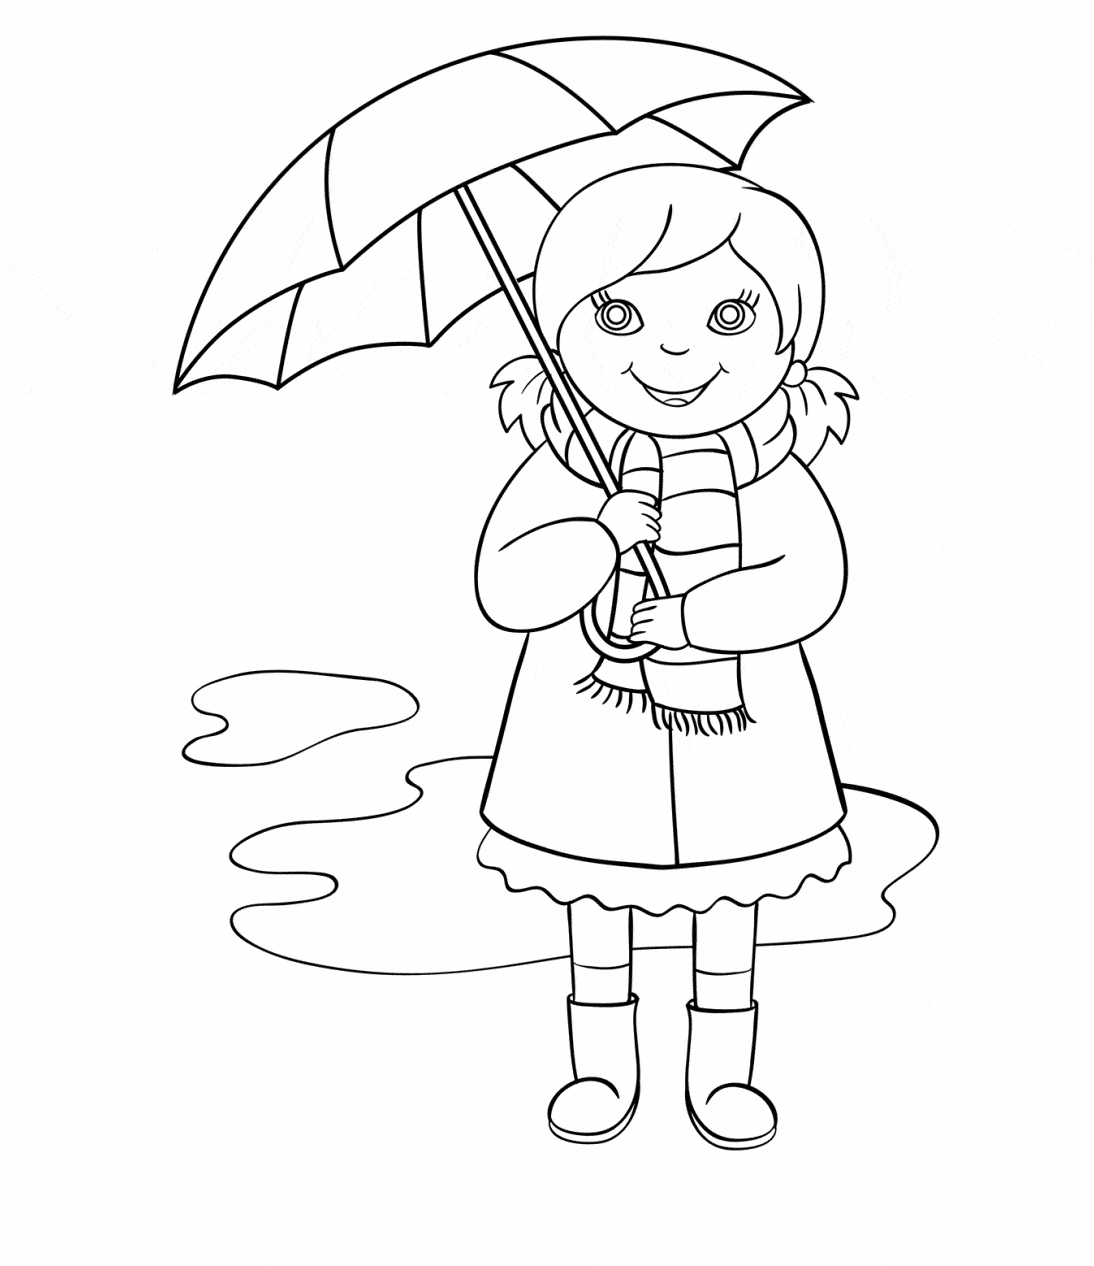 דף צביעה ילדה הולכת תחת מטריה